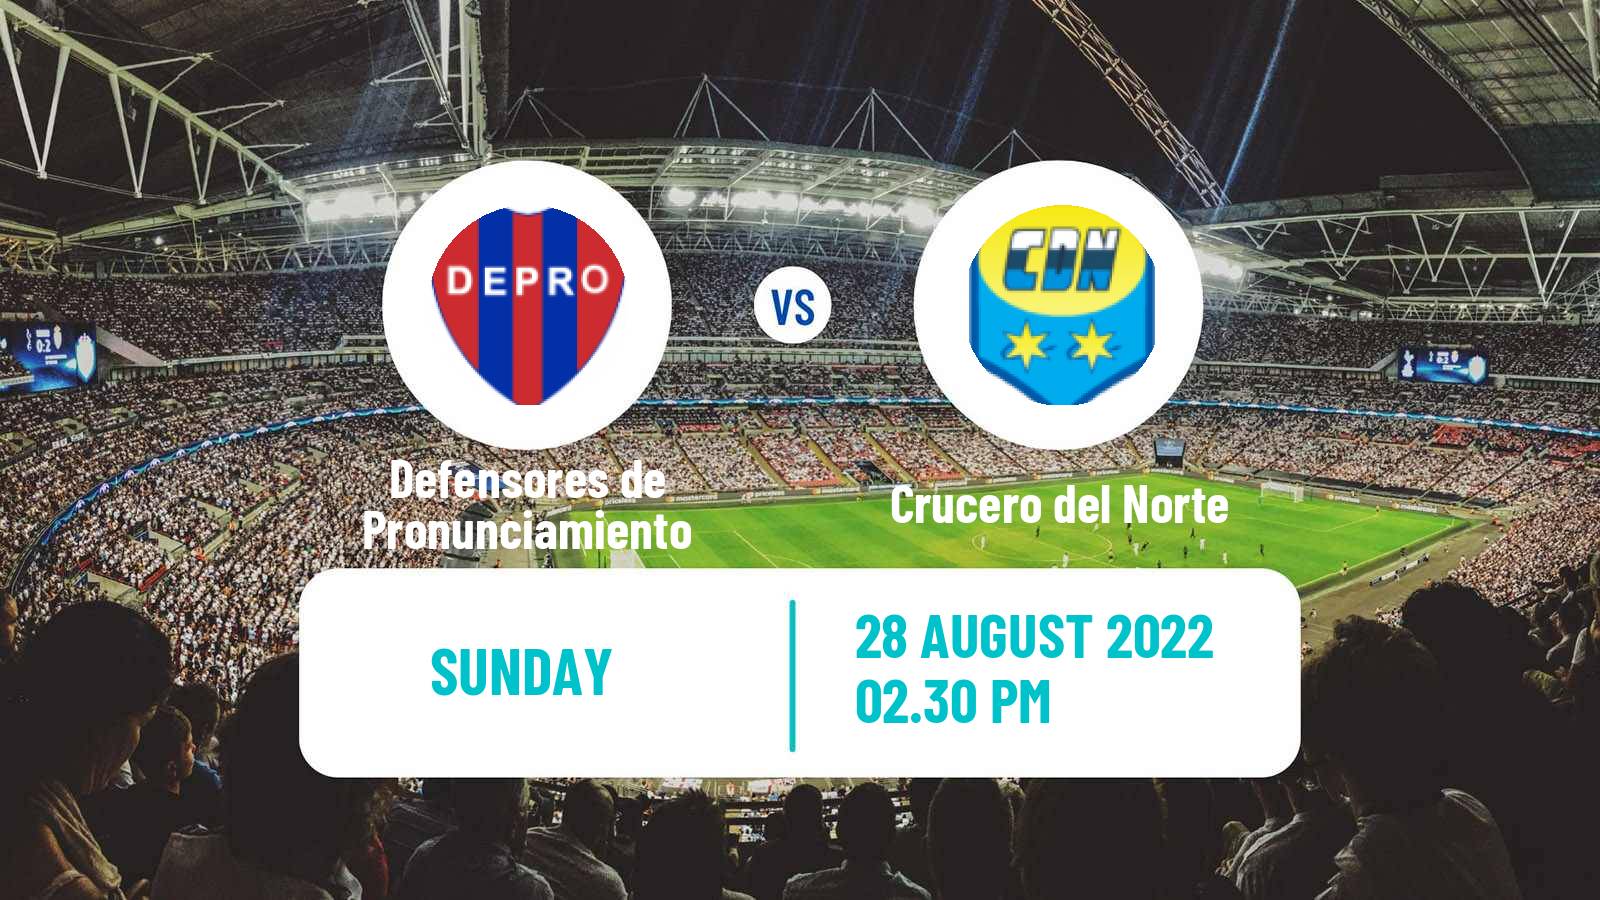 Soccer Argentinian Torneo Federal Defensores de Pronunciamiento - Crucero del Norte